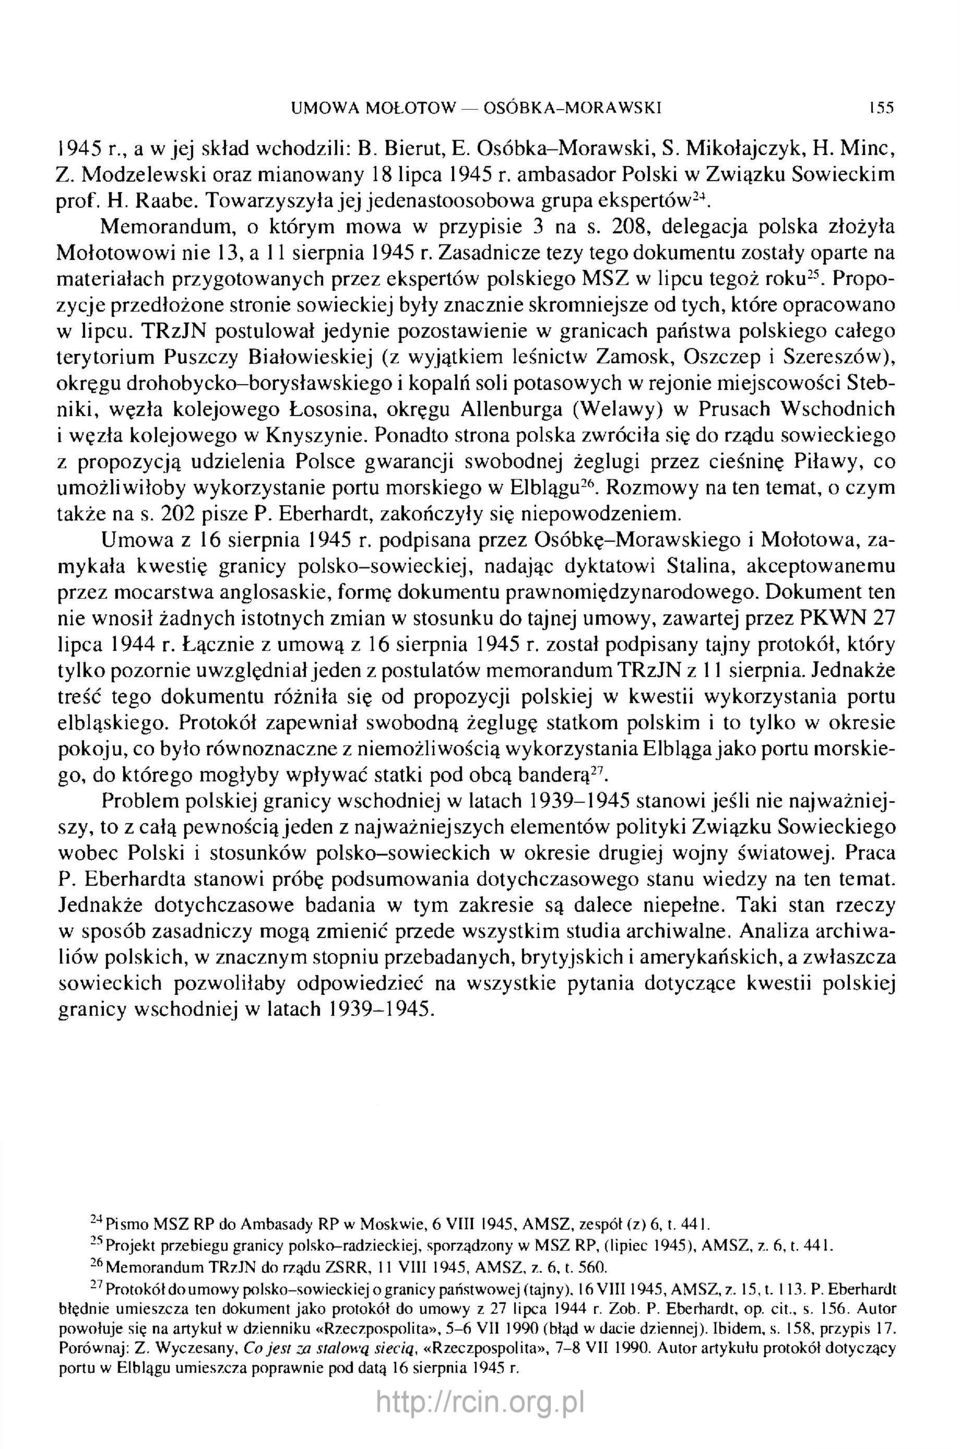 208, delegacja polska złożyła Mołotowowi nie 13, a 11 sierpnia 1945 r. Zasadnicze tezy tego dokumentu zostały oparte na materiałach przygotowanych przez ekspertów polskiego MSZ w lipcu tegoż roku 25.